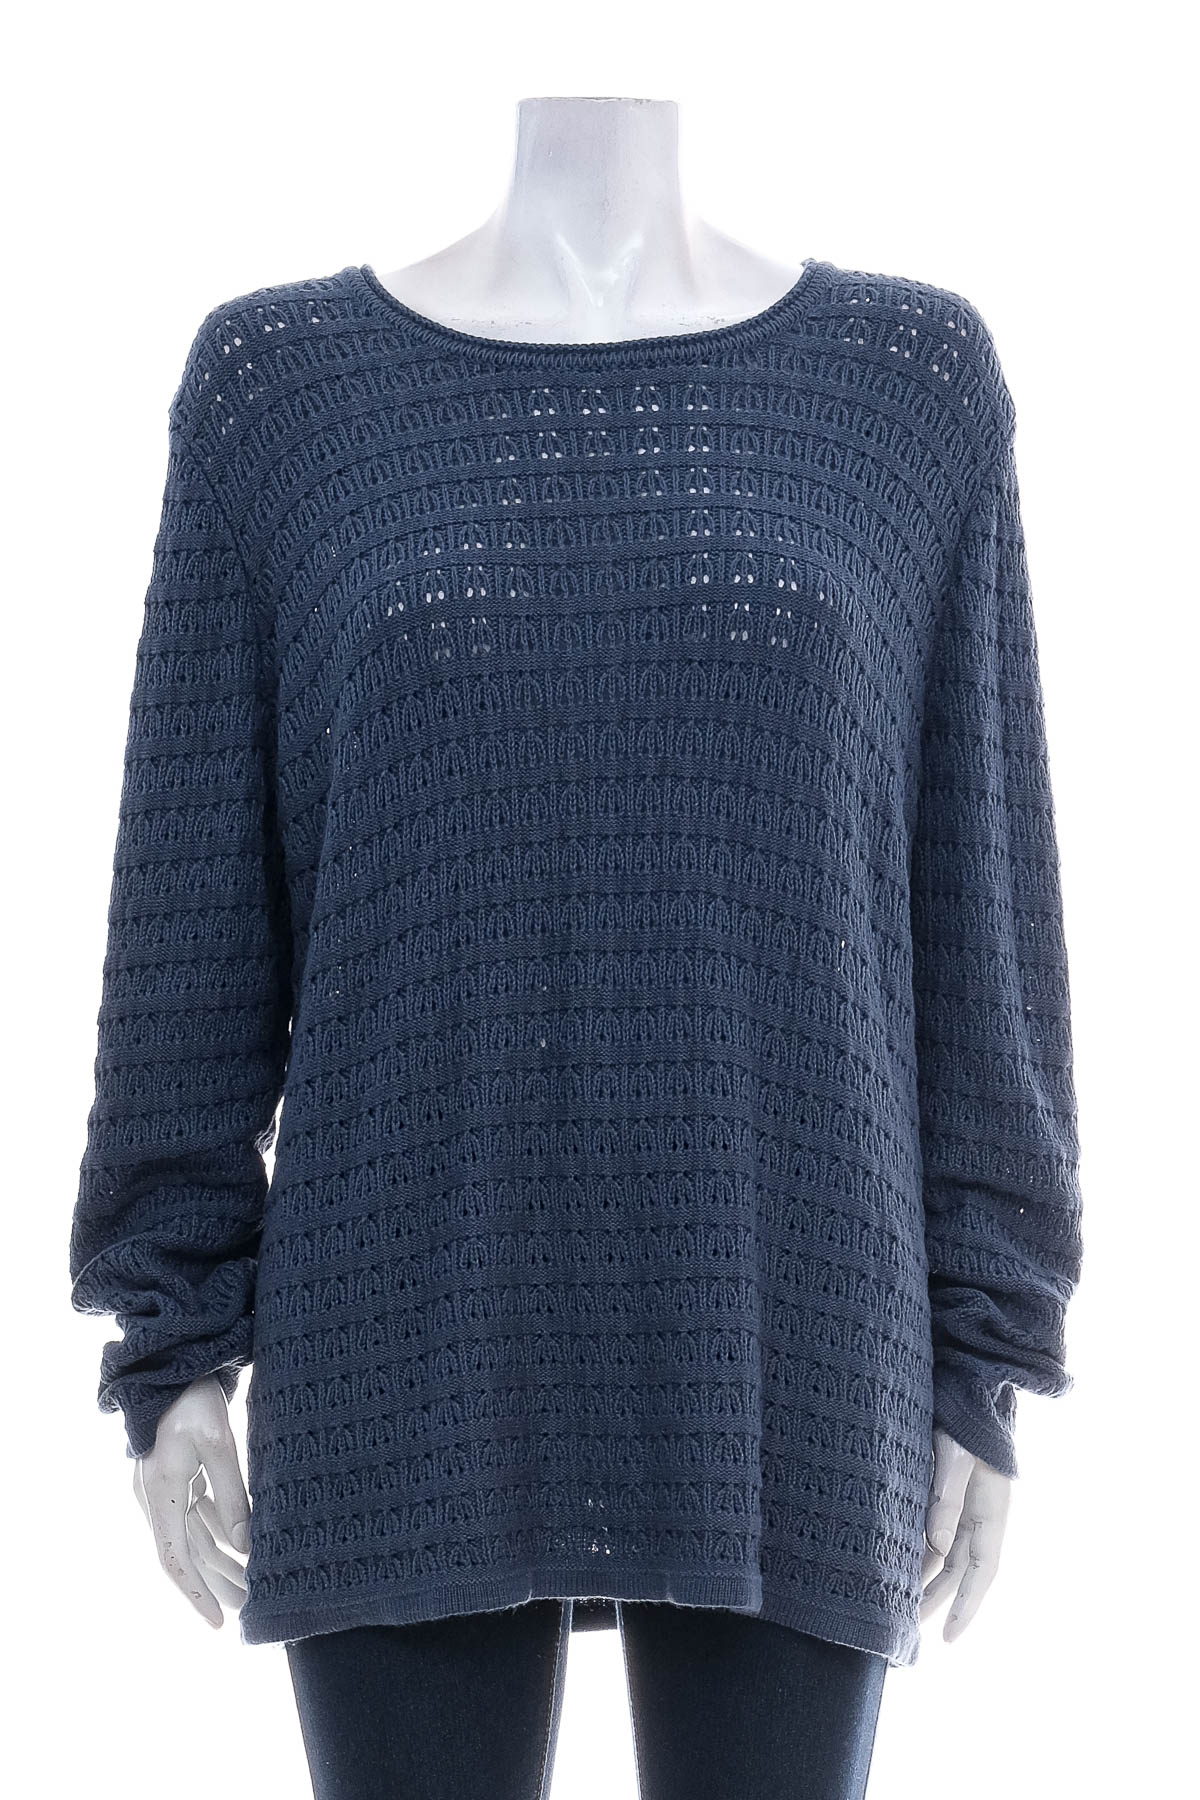 Women's sweater - Michele Boyard - 0